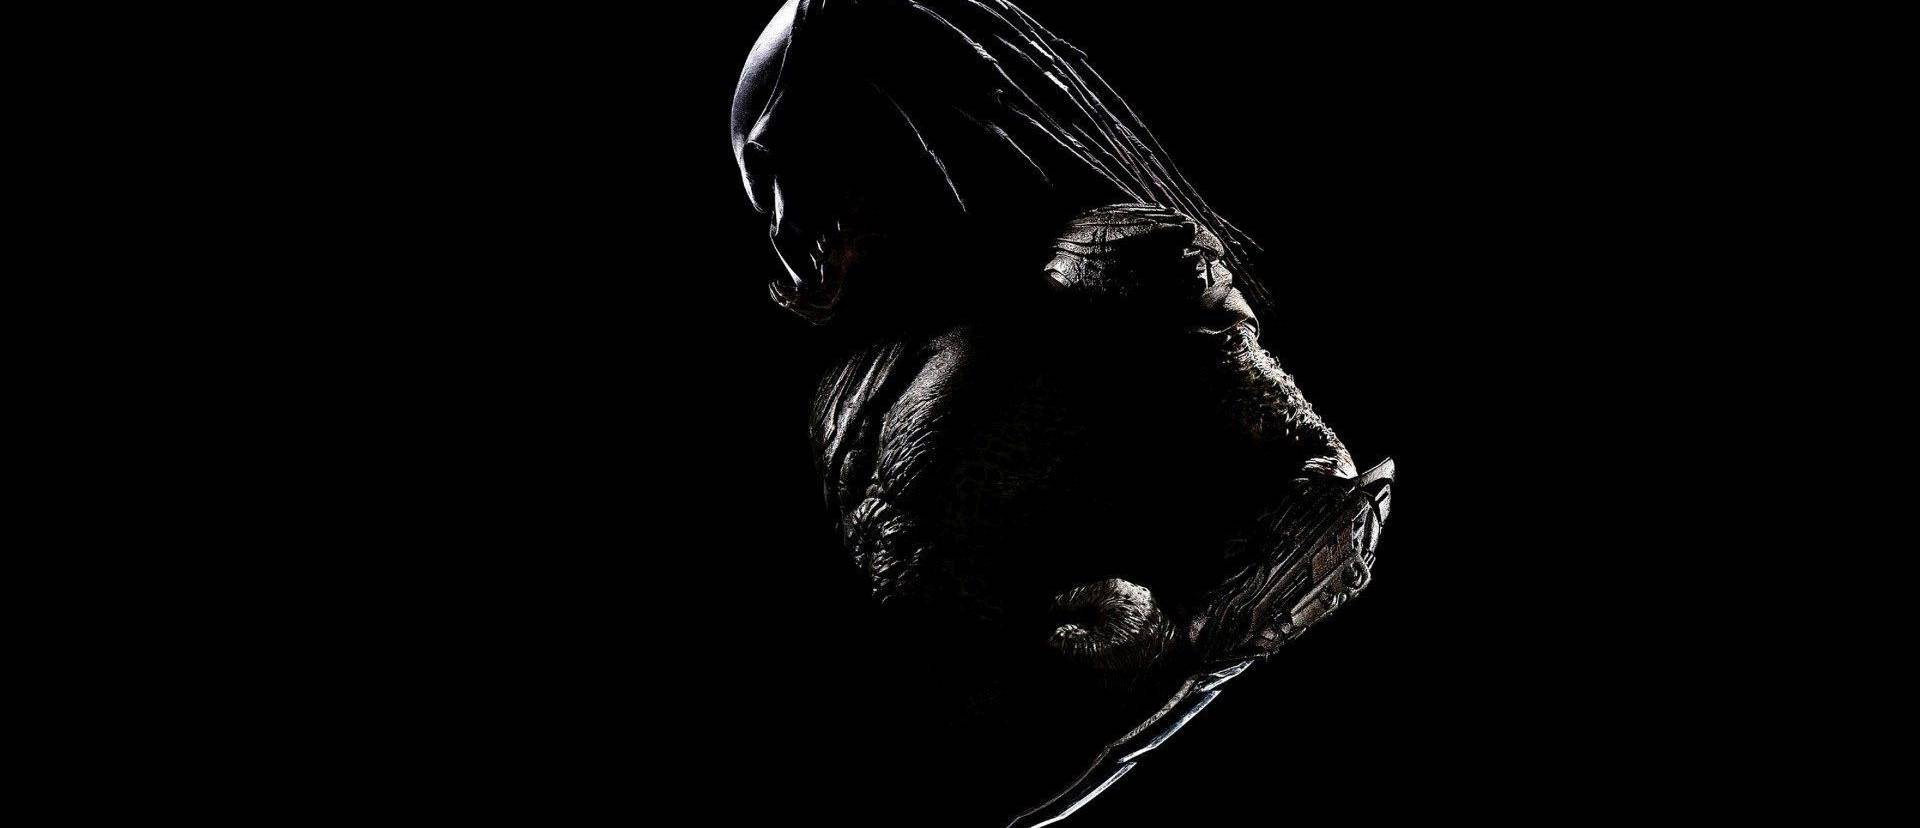 A Ragadozó visszatér - Készül az új Predator film